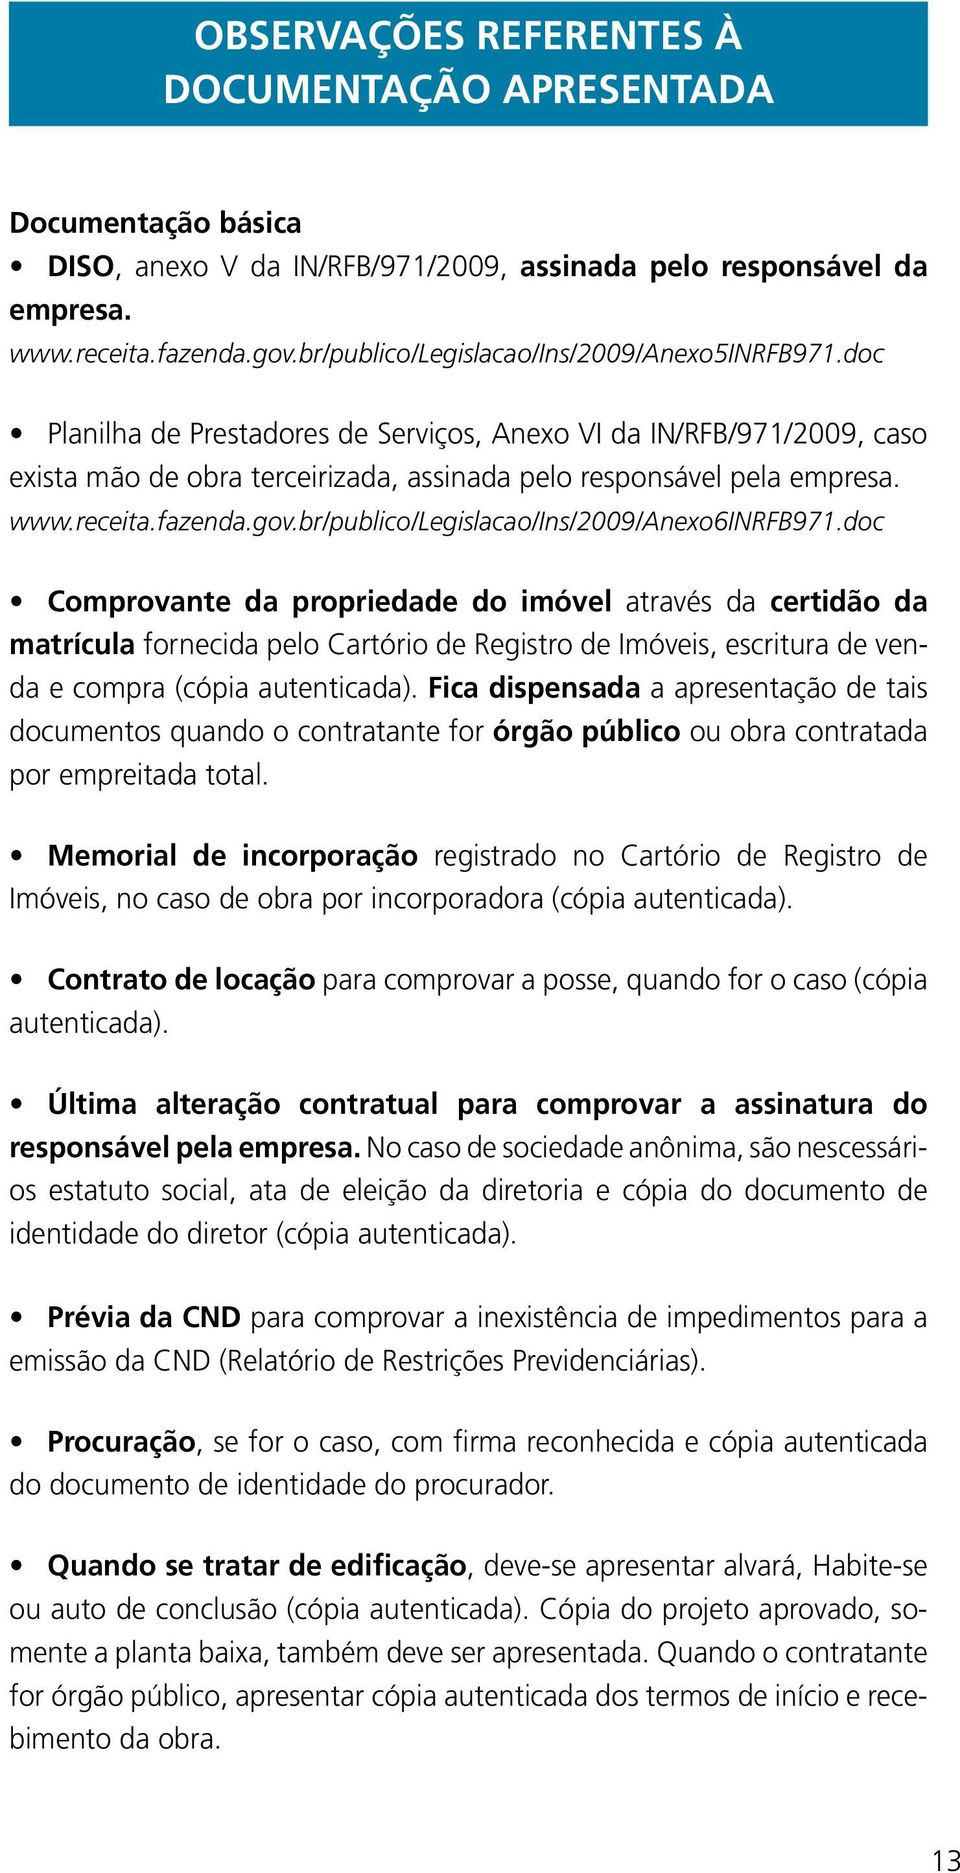 receita.fazenda.gov.br/publico/legislacao/ins/2009/anexo6inrfb971.